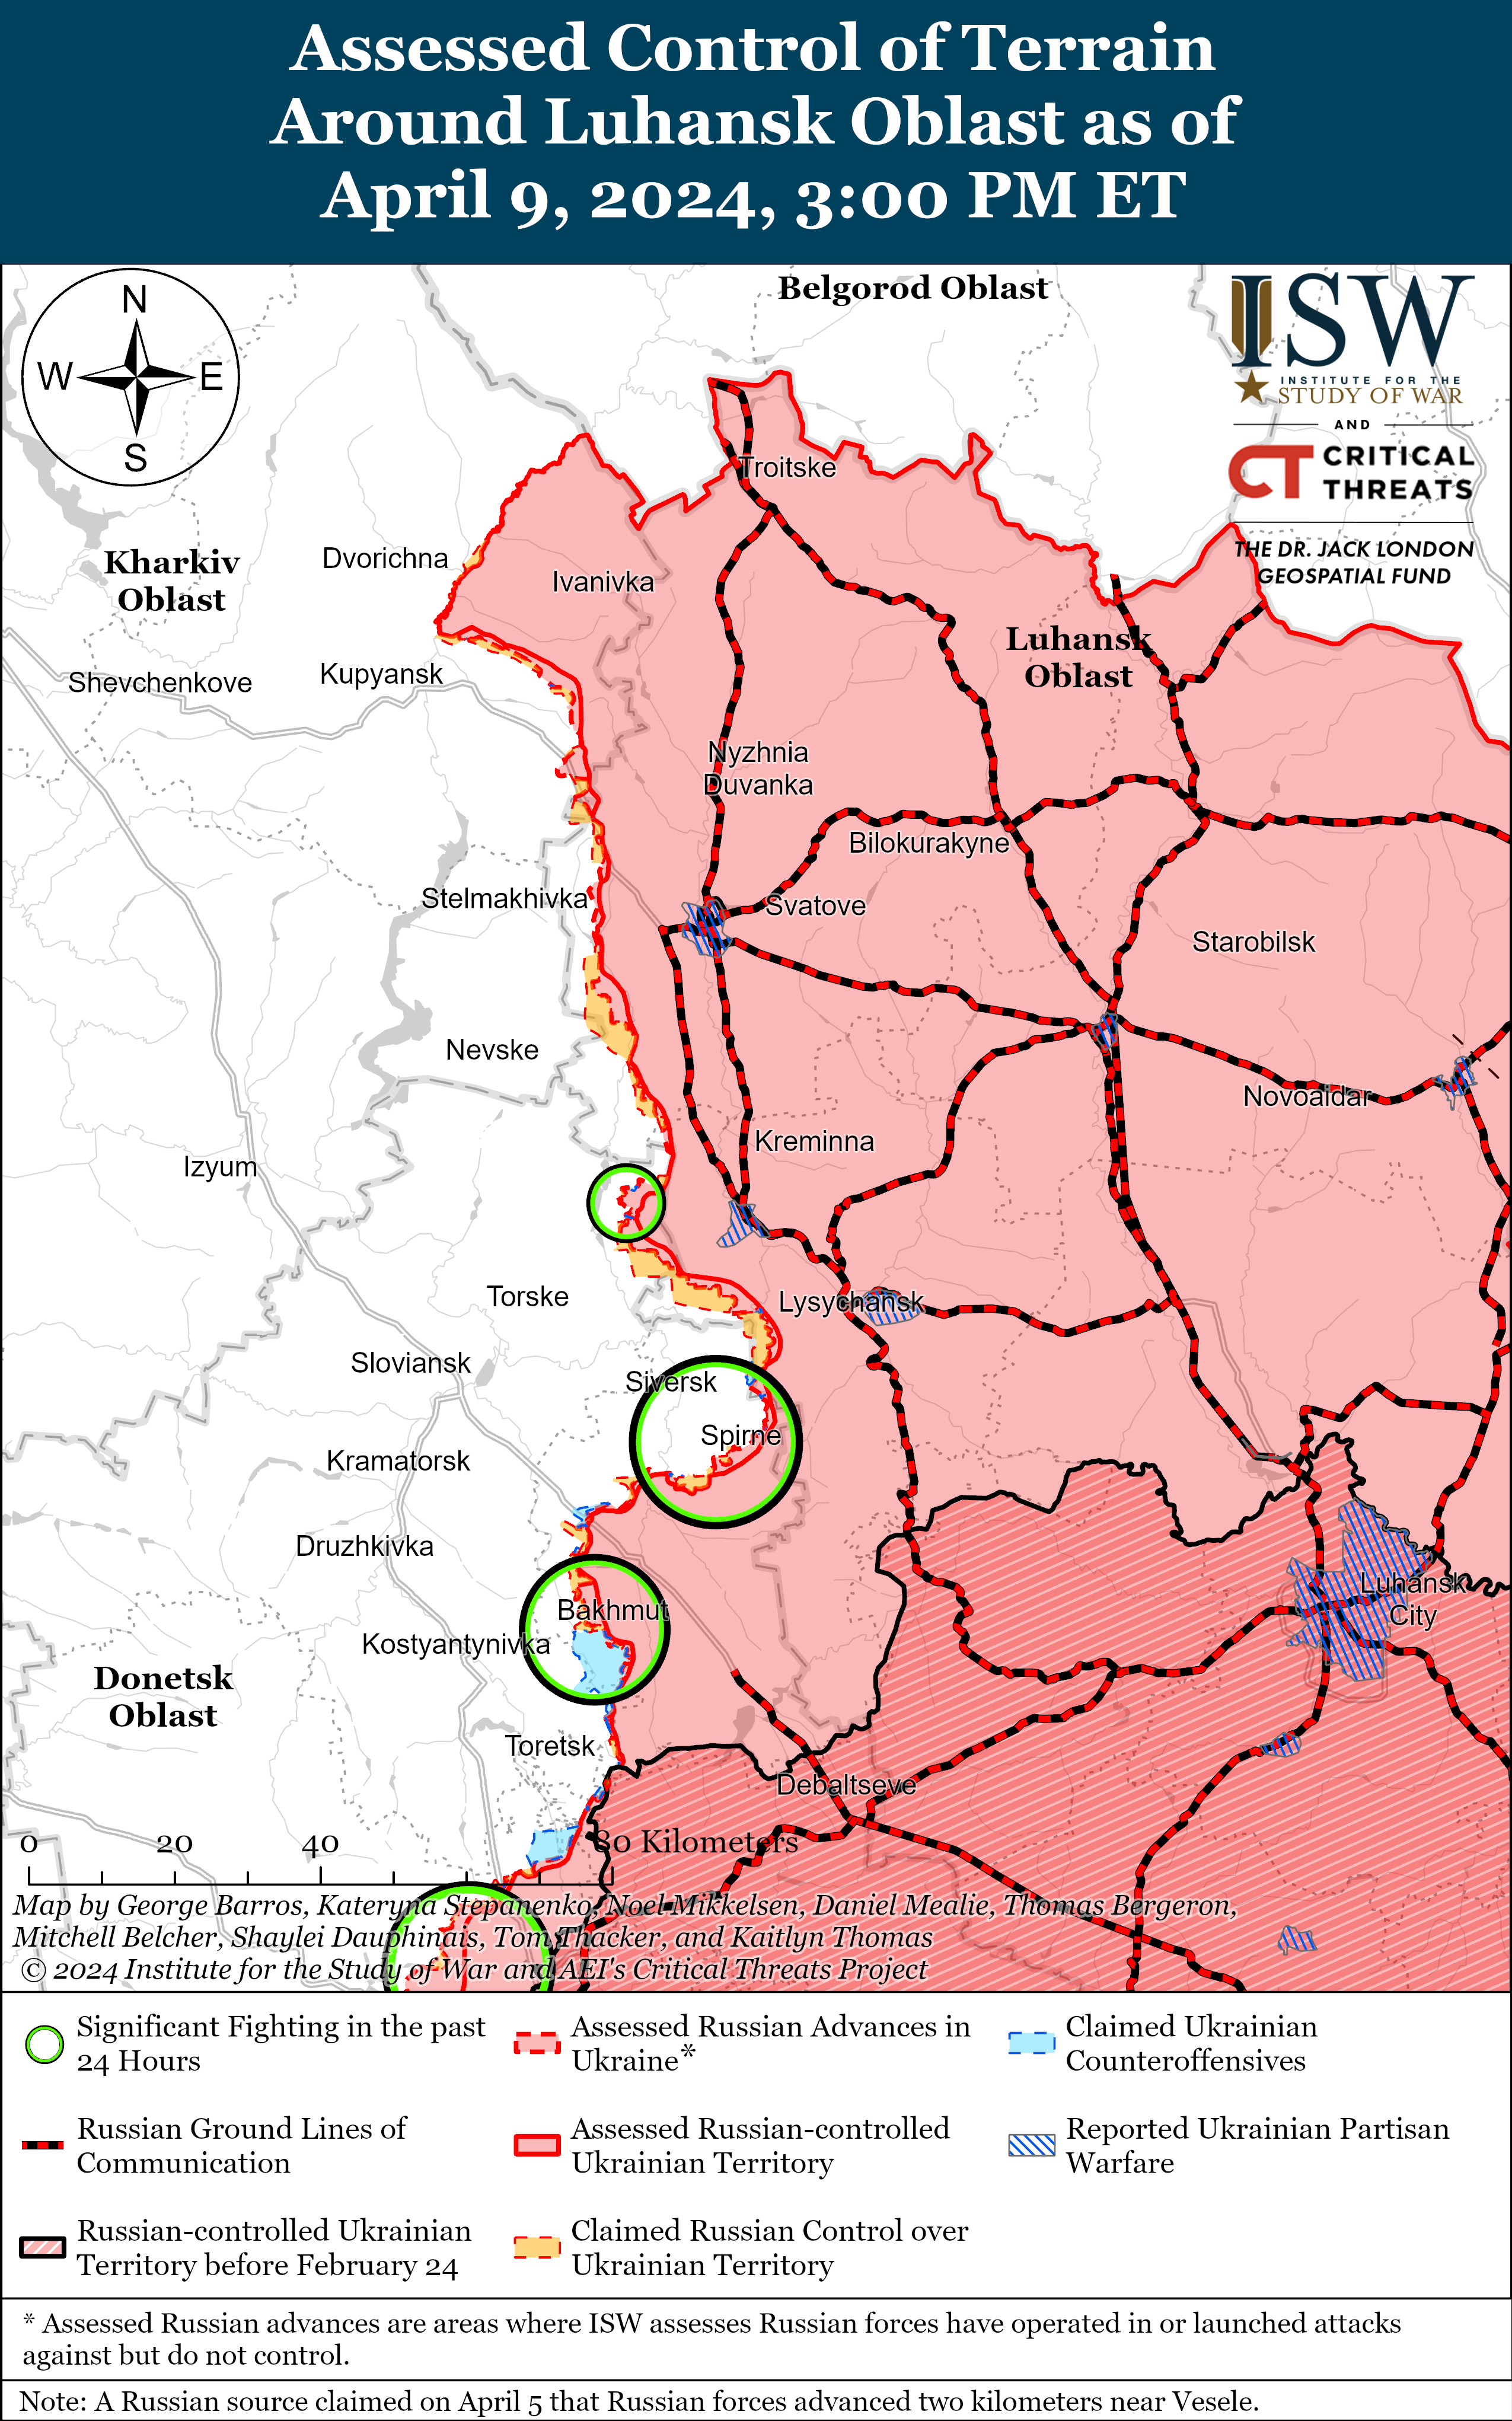 Втім, війська країни-агресорки втрачають обмежені позиції через постійні українські контратаки.